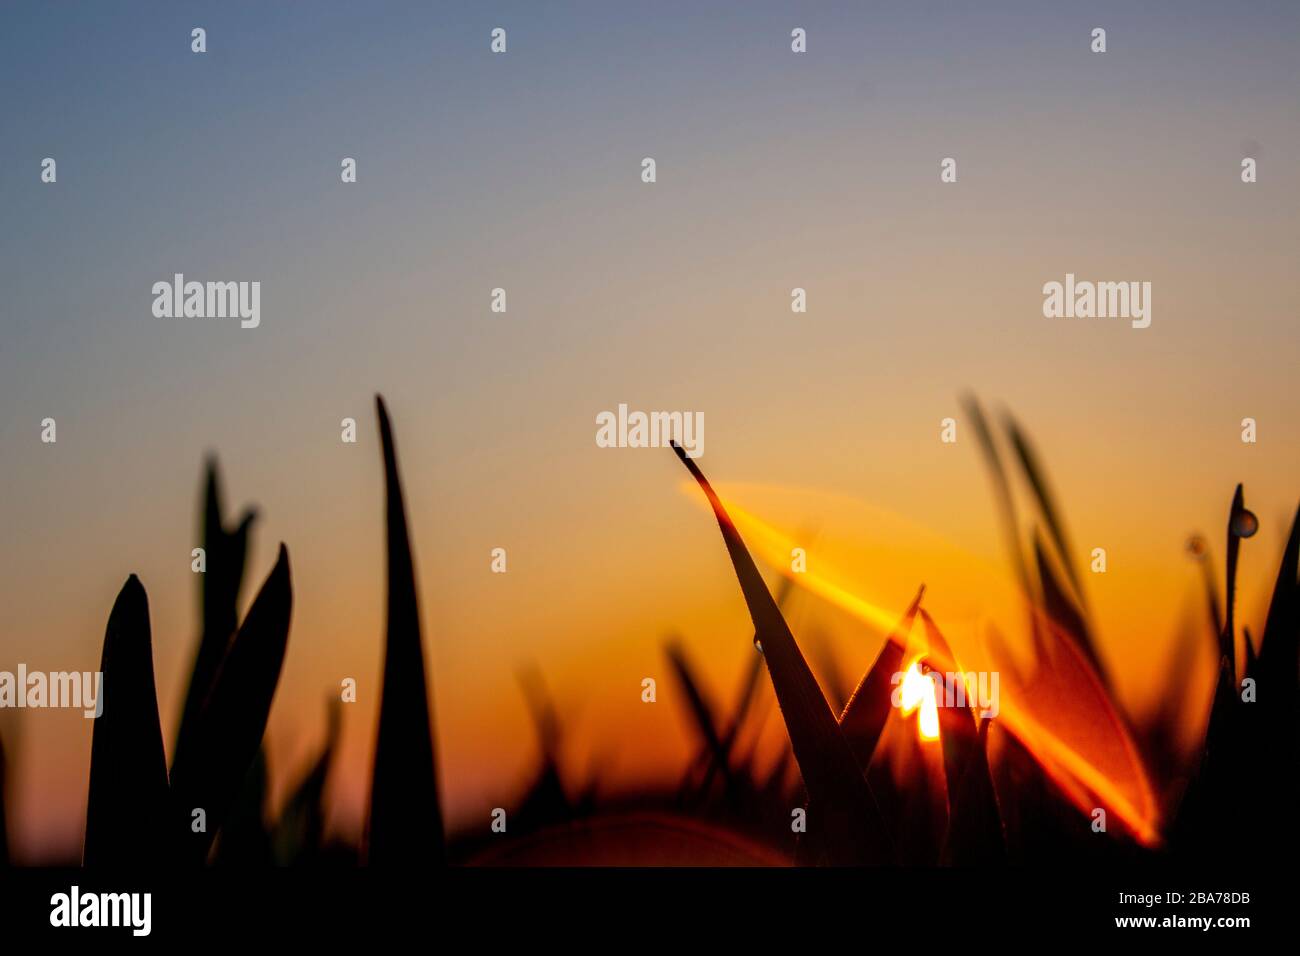 Il bagliore del sole dalla goccia di rugiada che ha colpito l'obiettivo della fotocamera e silhouette di foglie di grano, o erba in prima mattina o tarda sera. Foto Stock